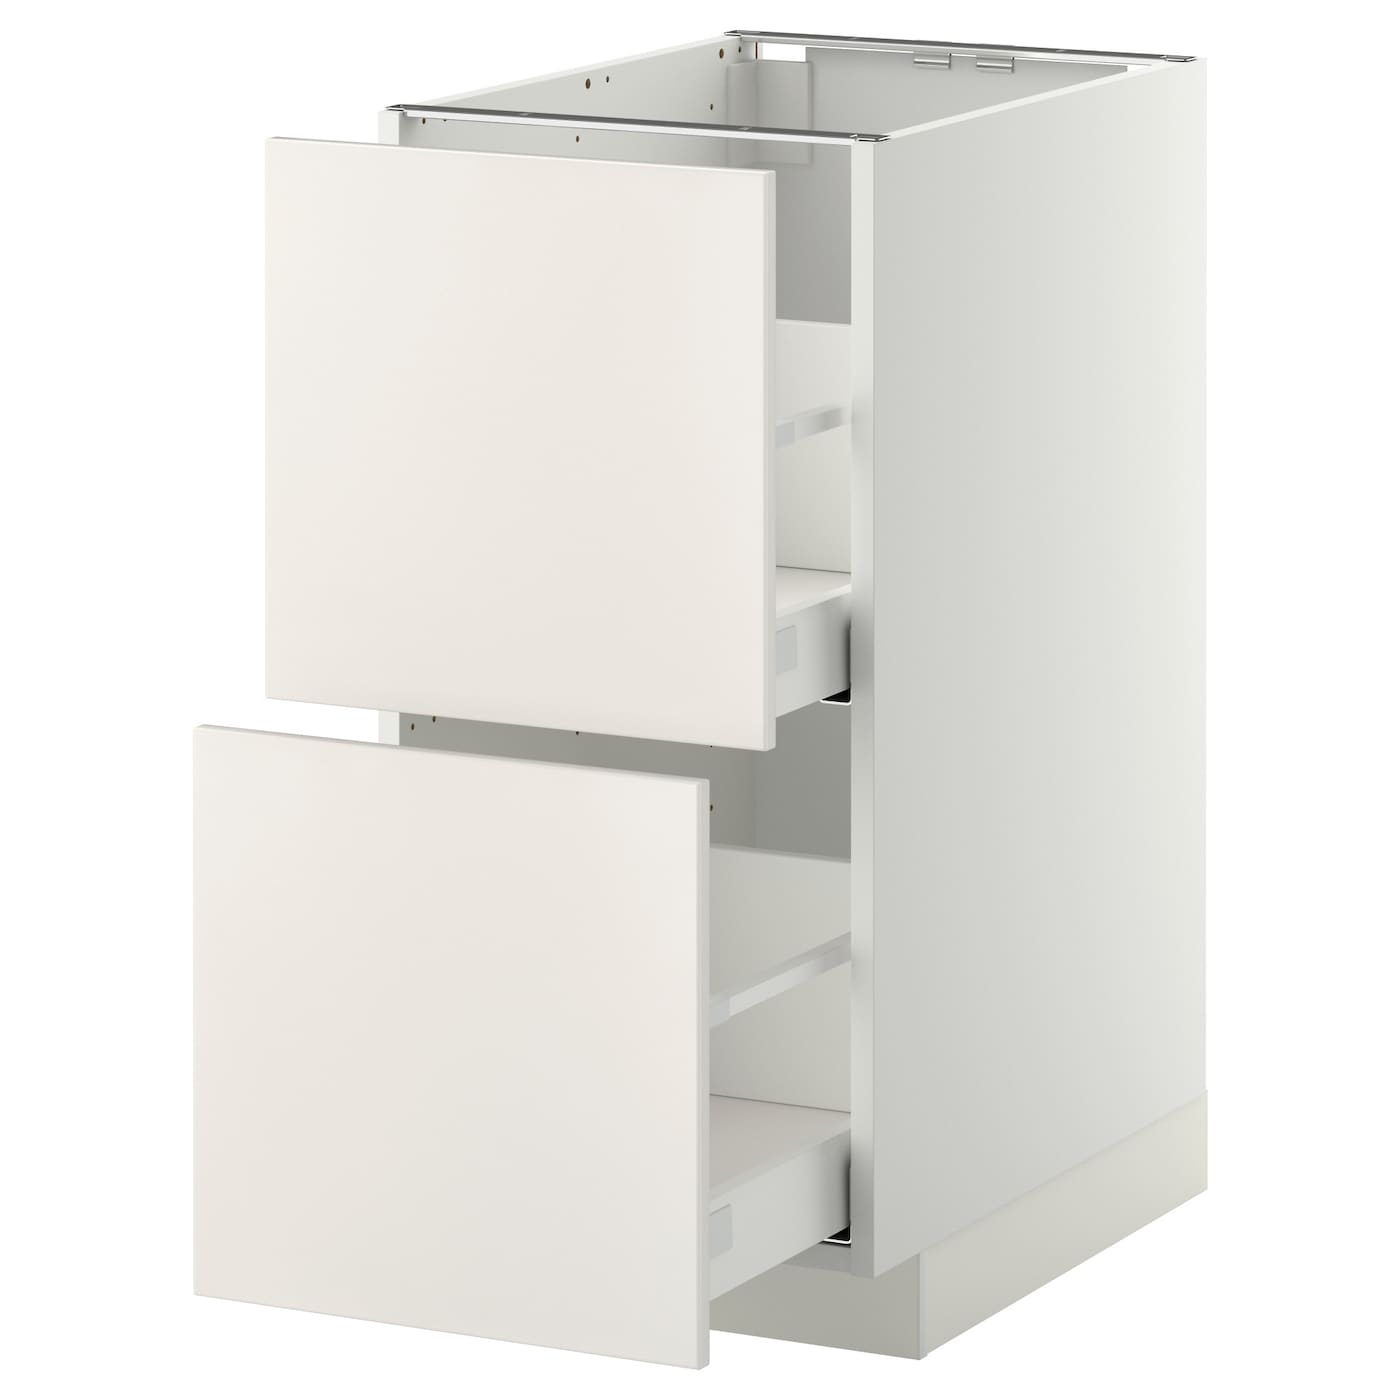 Напольный кухонный шкаф  - IKEA METOD MAXIMERA, 88x61,6x40см, белый, МЕТОД МАКСИМЕРА ИКЕА